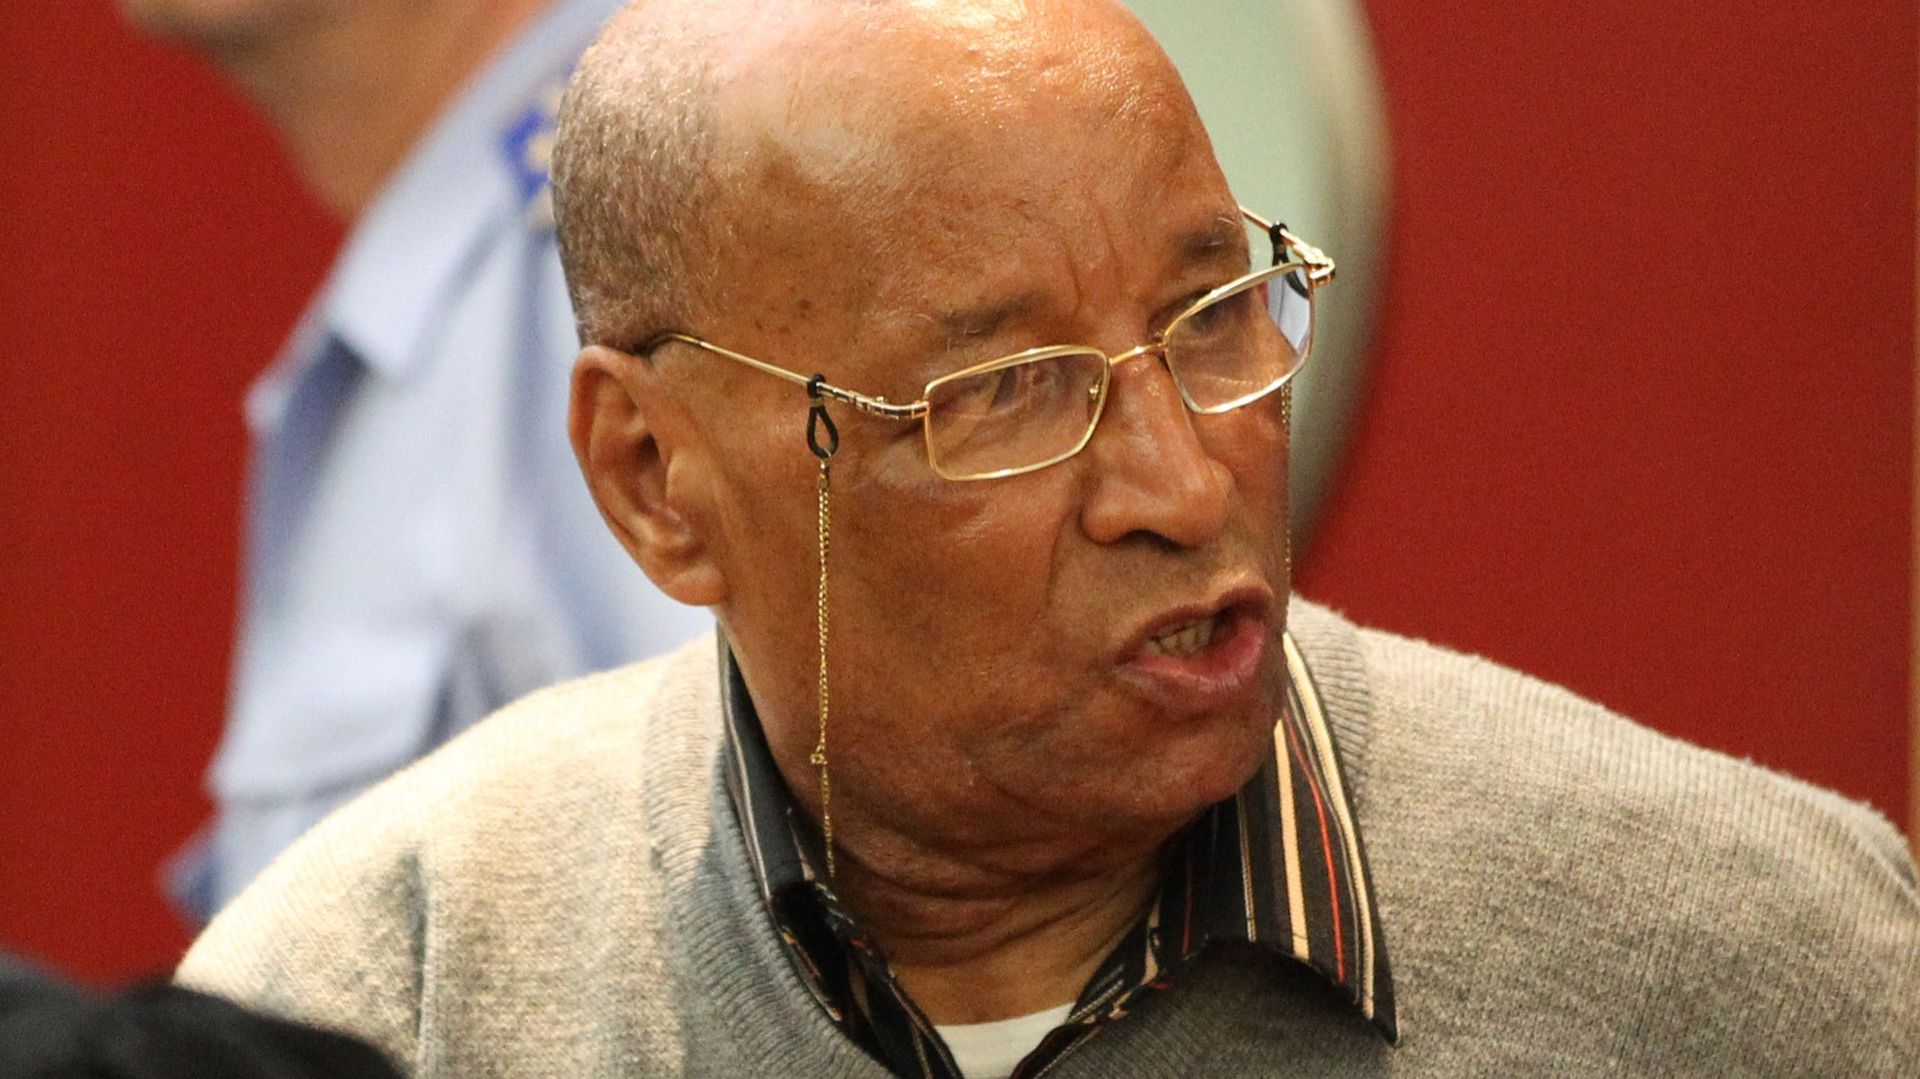 Mohamed Jratlou à l'issue de son procès le 15 juin 2012